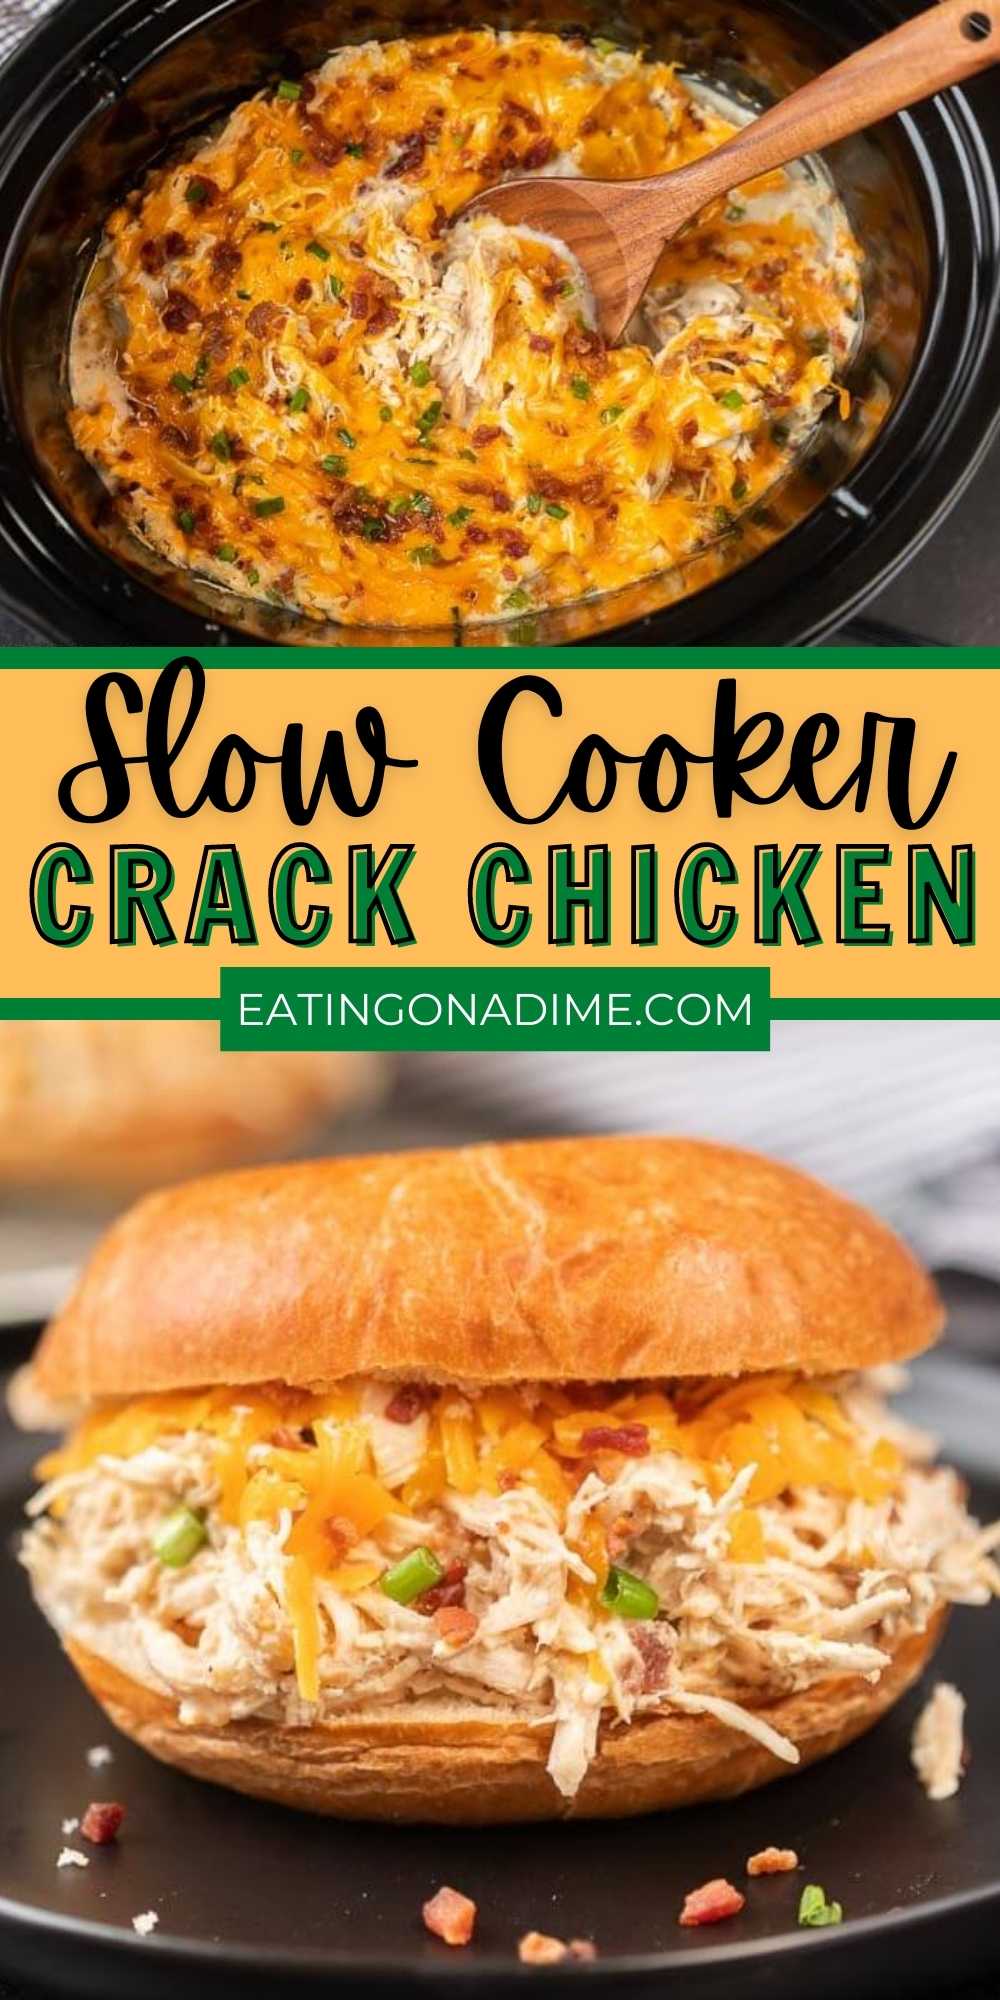 Slow Cooker Crack Chicken (& Video!) - Crock pot Crack chicken recipe